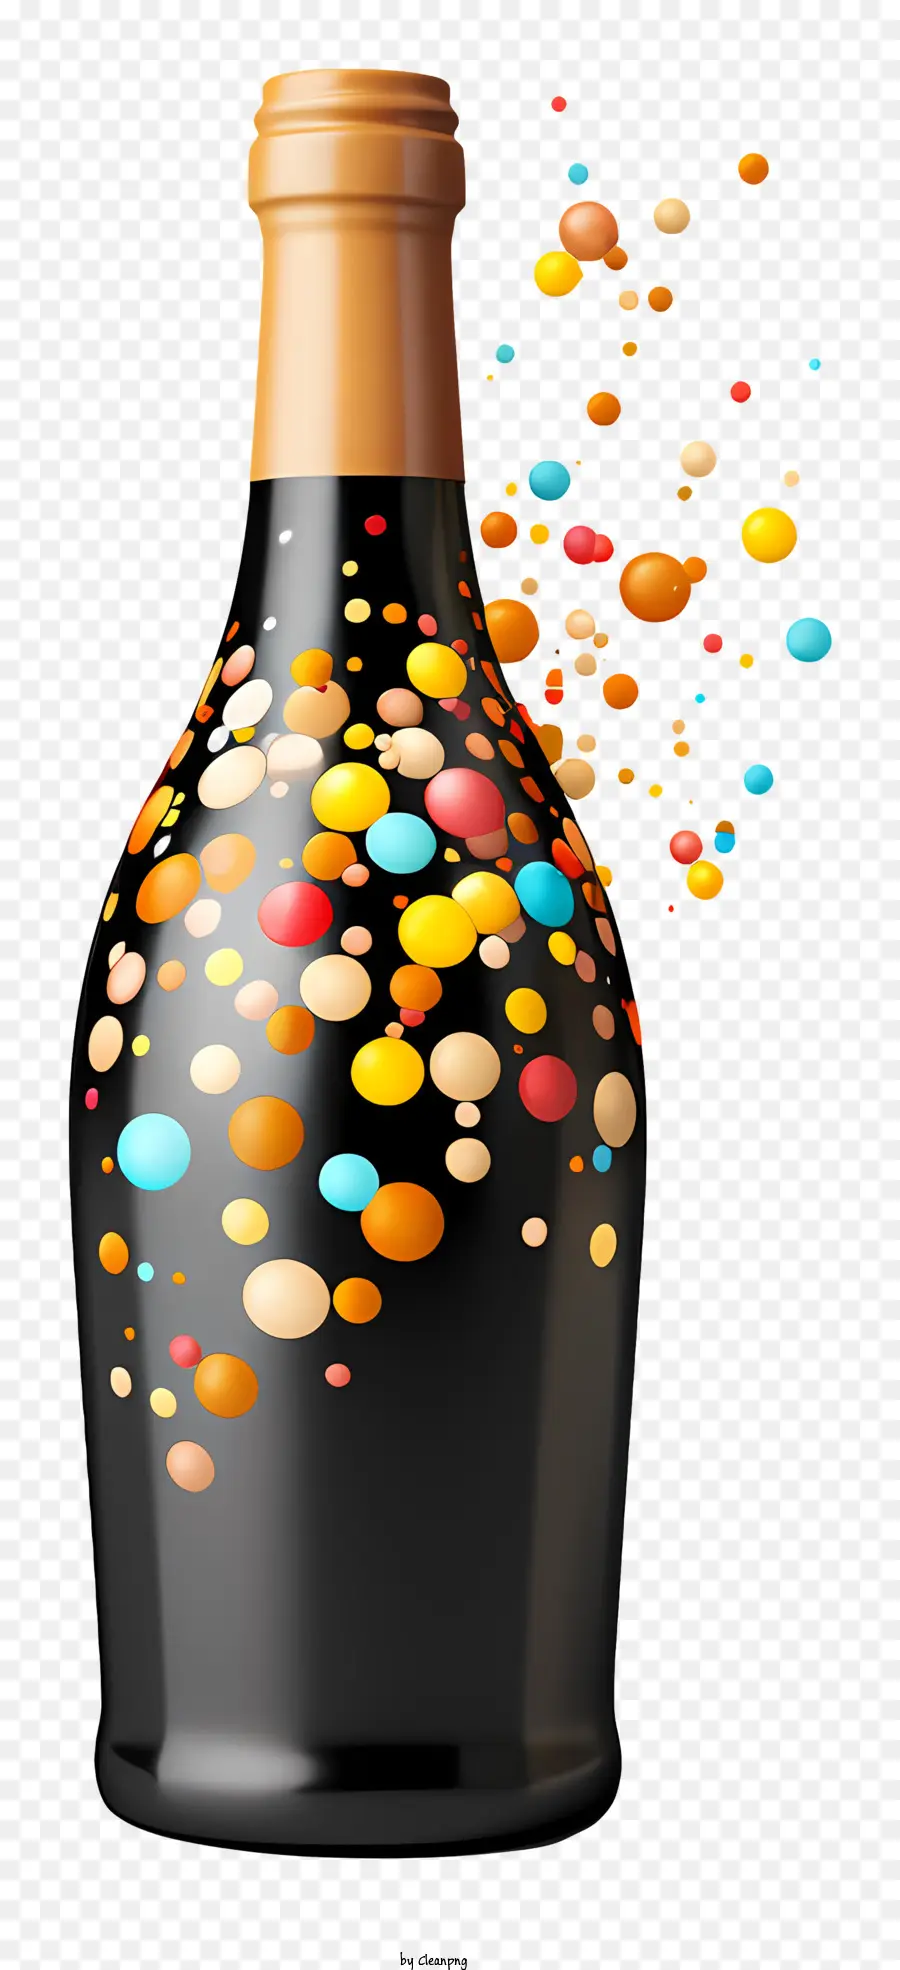 Weinflaschenblasen, die schwarze Flaschen mehrfarbige Blasen gießen - Buntes Blasenflasche Wein